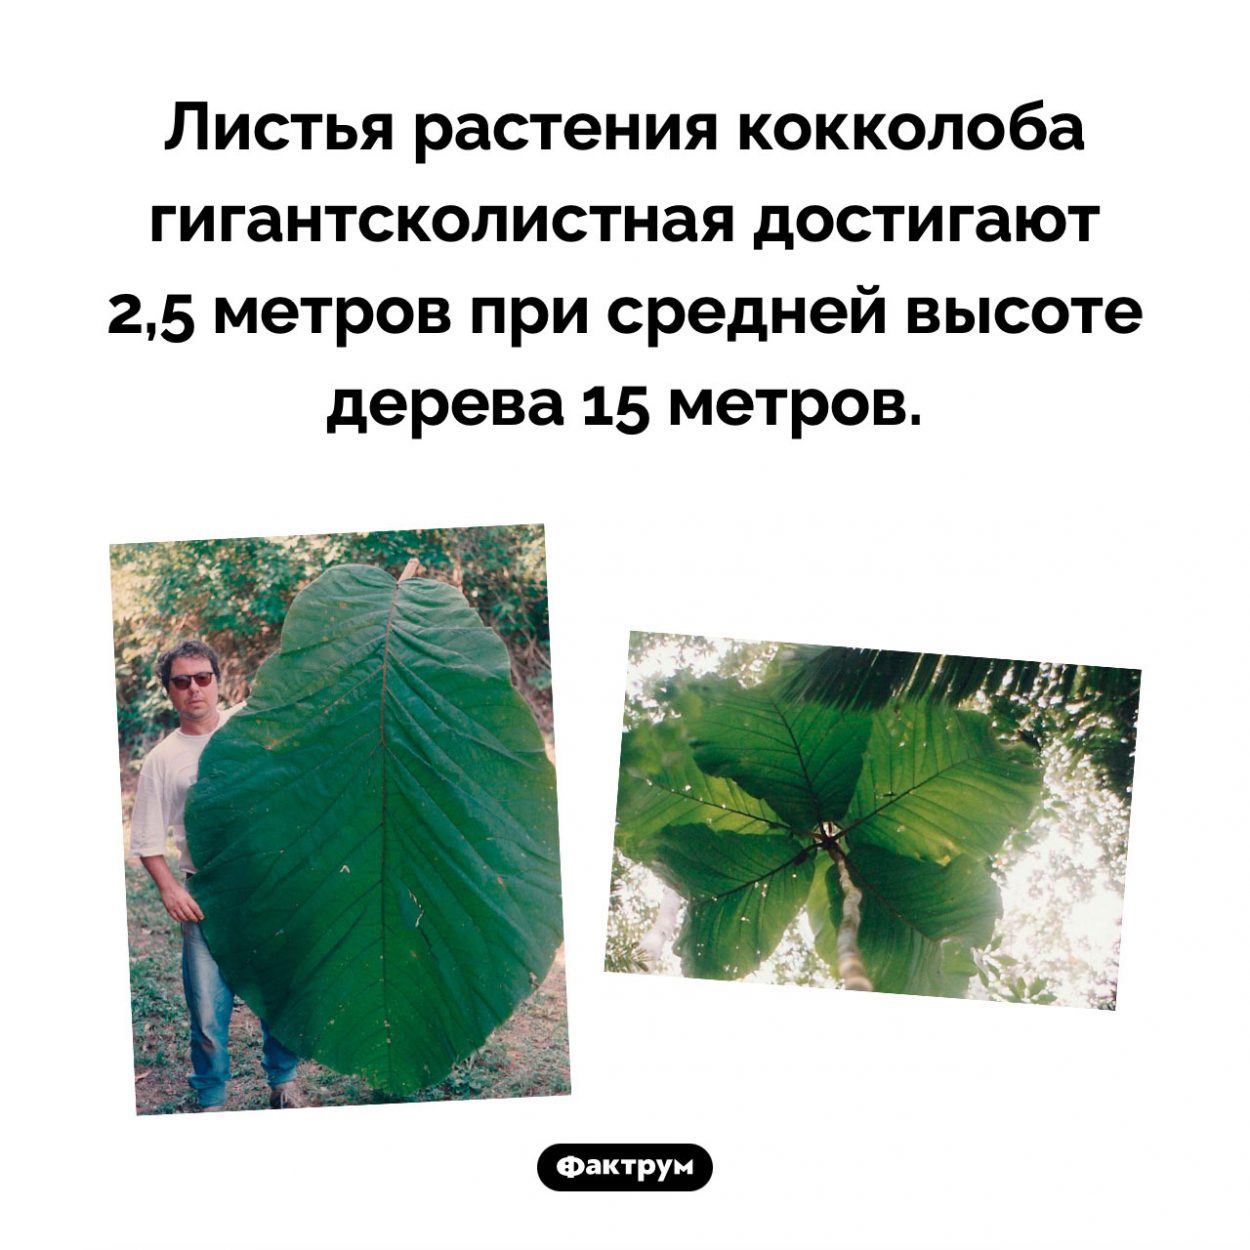 Гигантские листья. Листья растения кокколоба гигантсколистная достигают 2,5 метров при средней высоте дерева 15 метров.